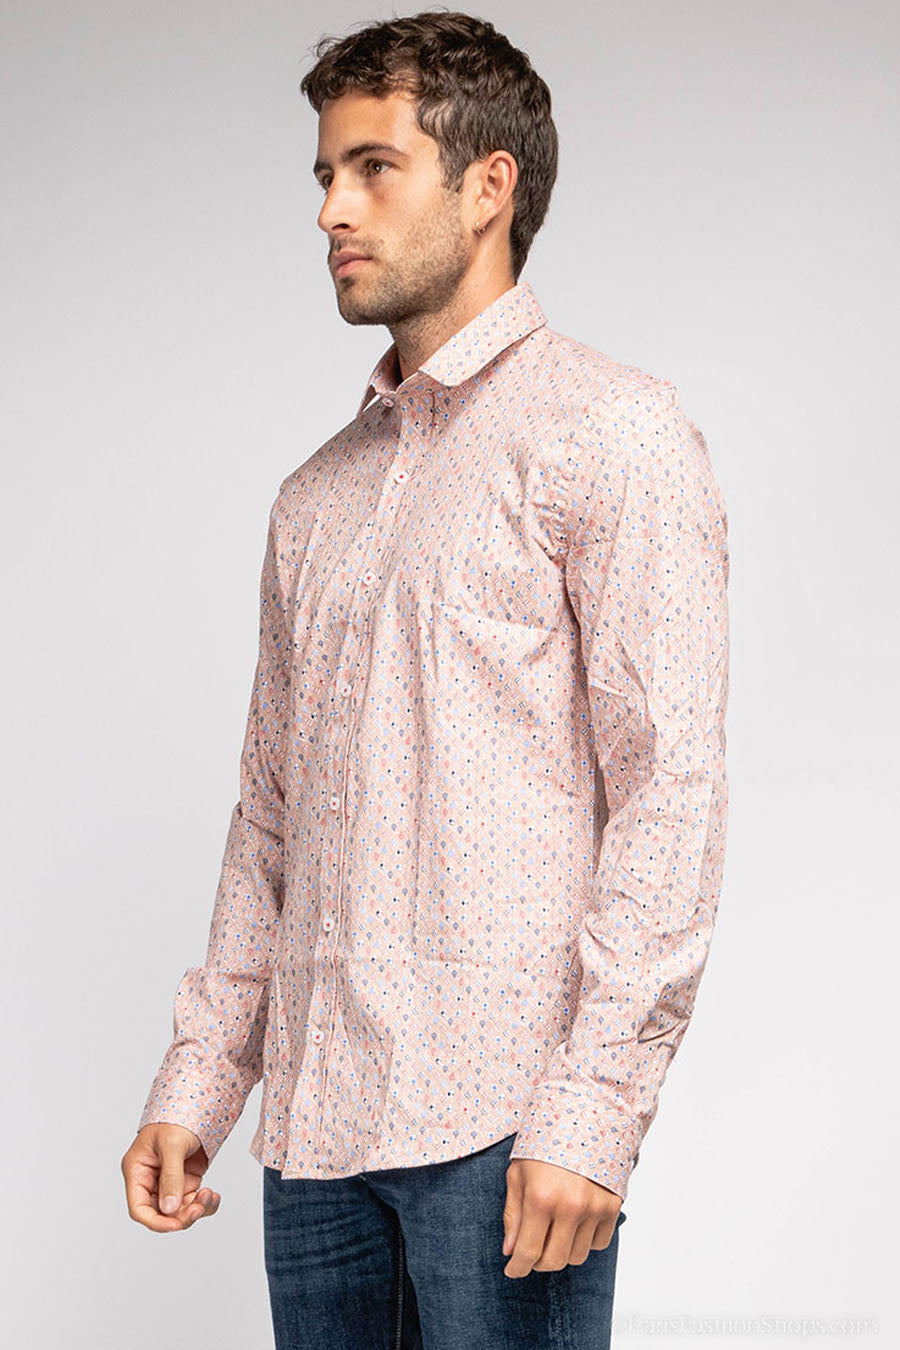 Ανδρικό πουκάμισο Aldwyn, Ροζ 3